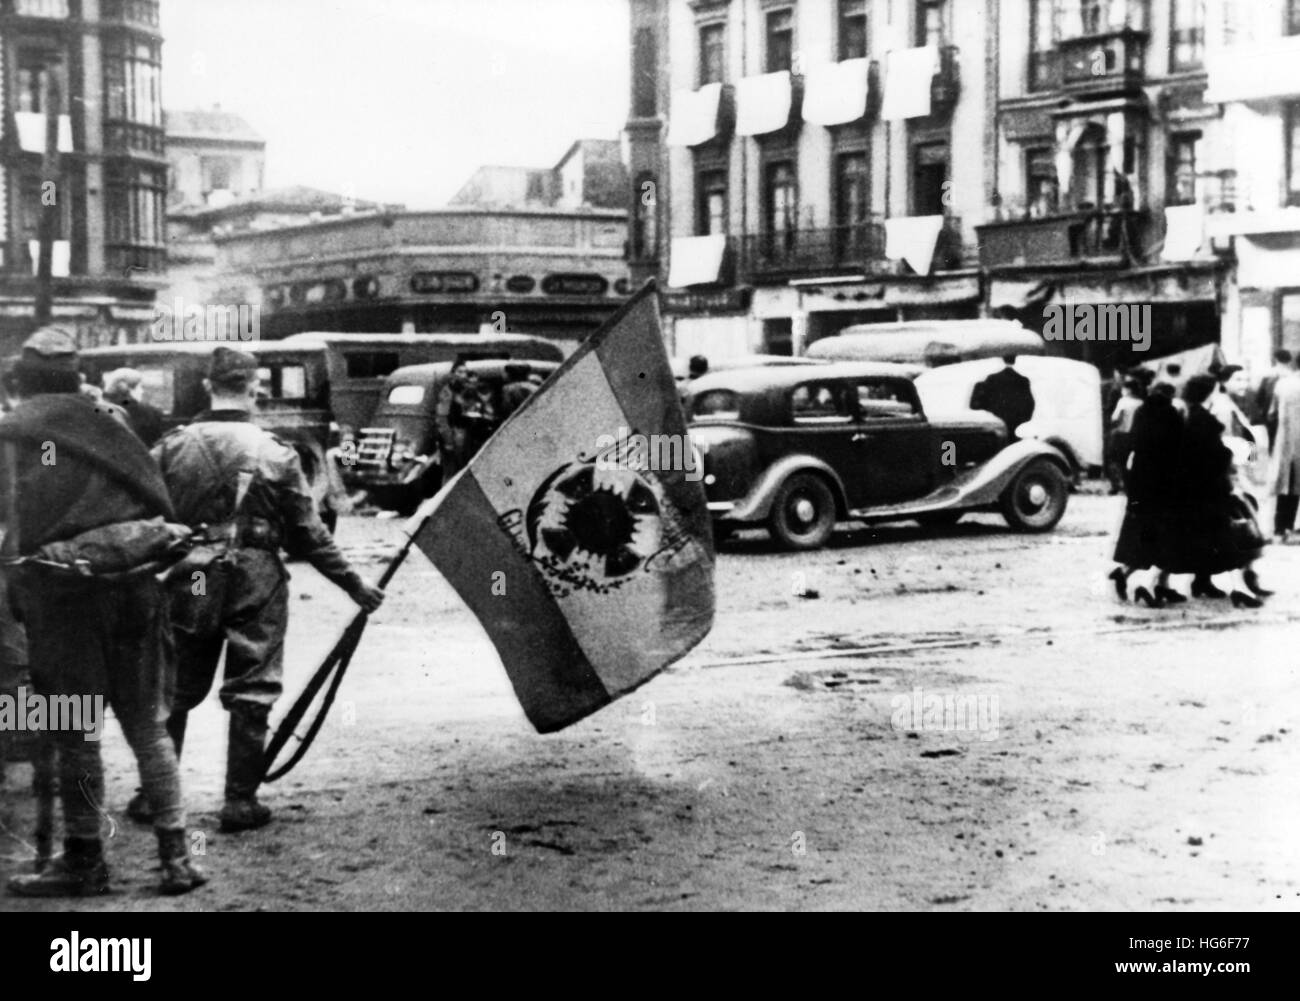 La foto della propaganda nazista mostra come le truppe di Francos occupano la città di Gijón, Spagna, novembre 1937. I panni bianchi appendono dalle finestre sullo sfondo simbolizzando la resa. Fotoarchiv für Zeitgeschichtee- NO WIRE SERVICE - | usage worldwide Foto Stock